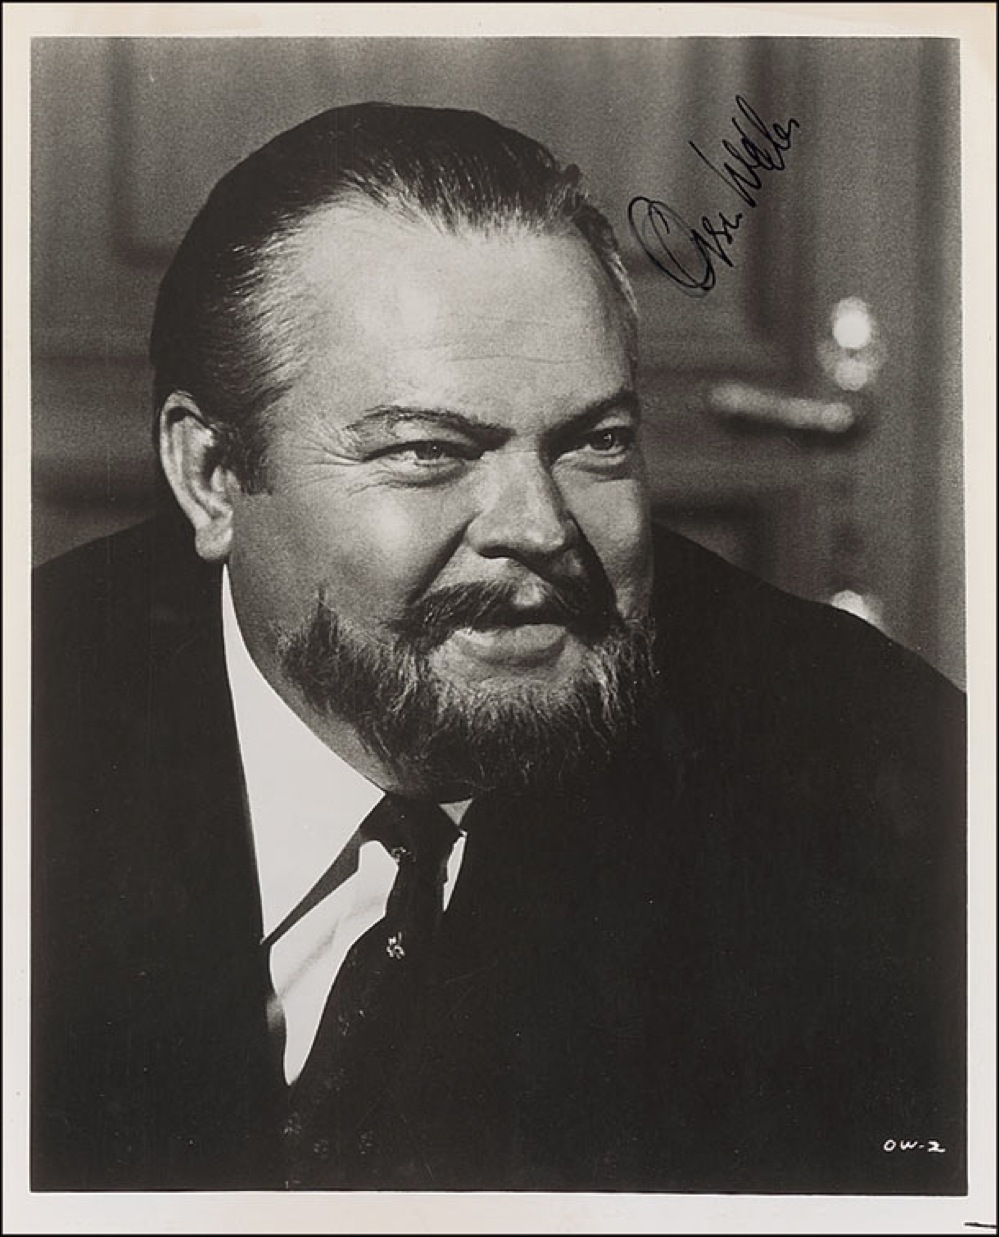 Lot #1309 Orson Welles